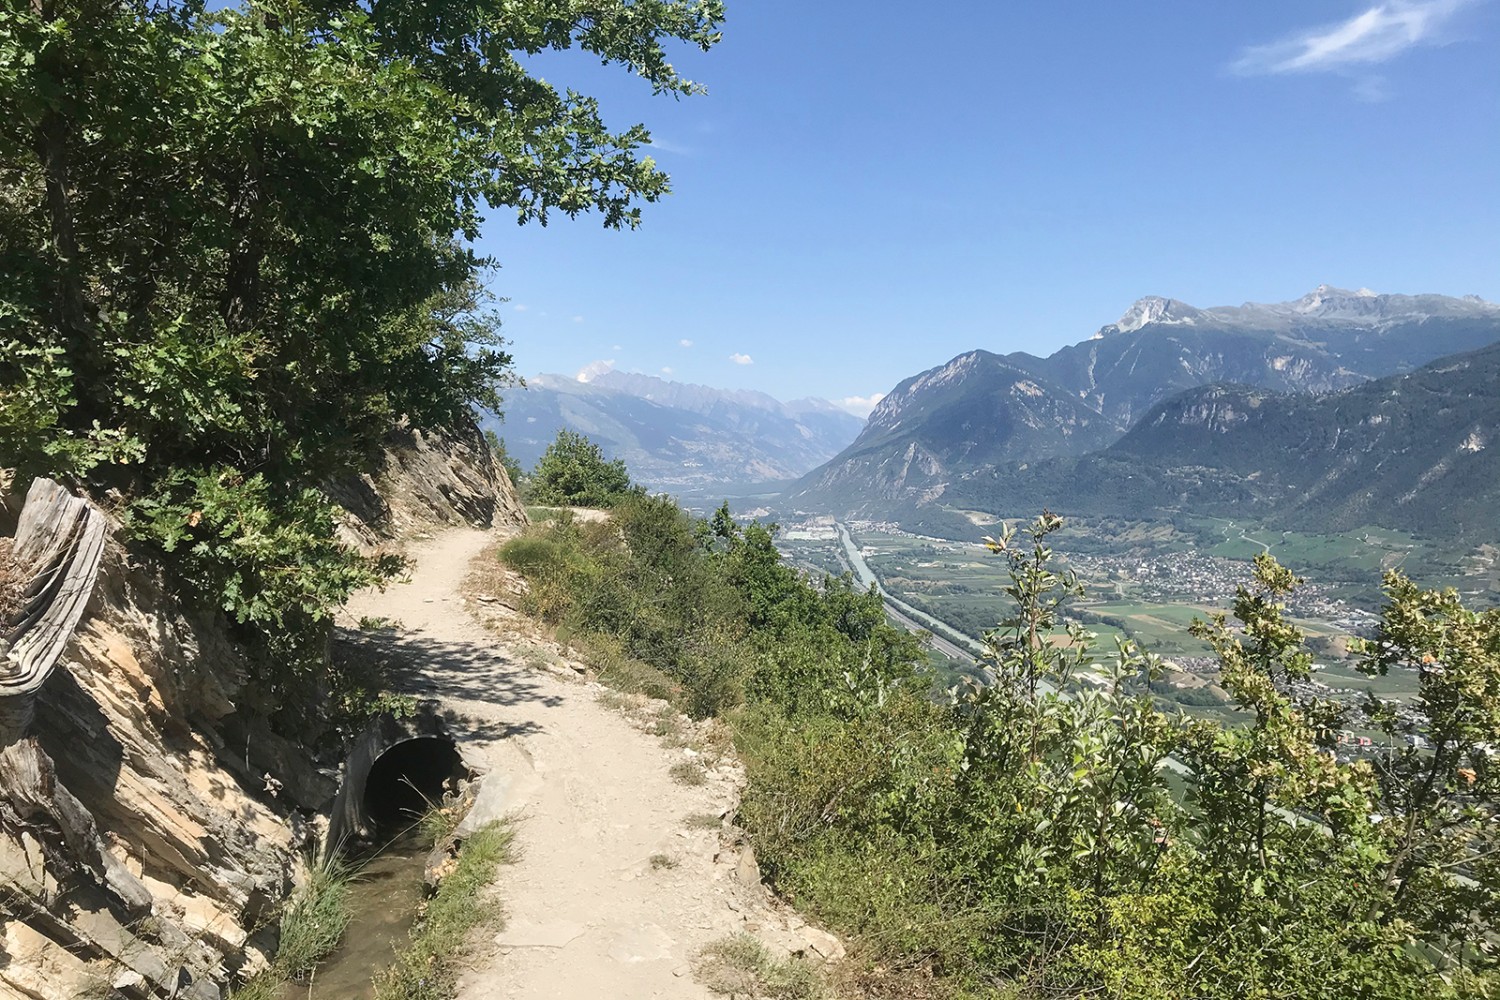 Après le belvédère, la vue s’ouvre dans la vallée du Rhône en direction du Haut-Valais. Photo: Loïc von Matt